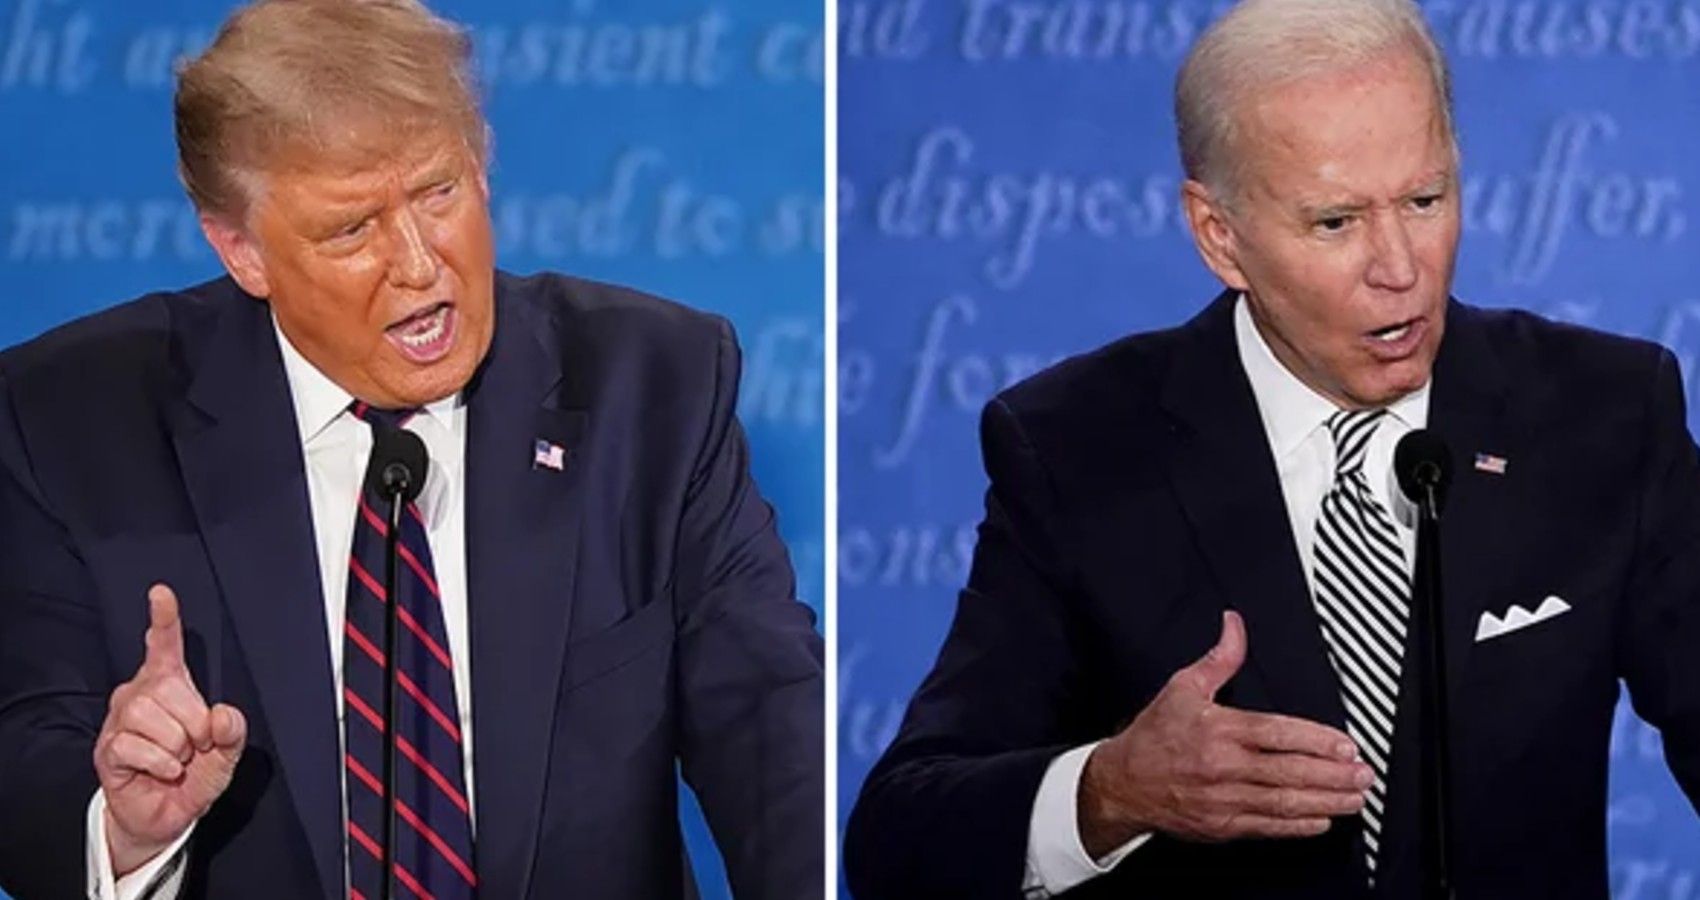 President Donald Trump and Joe Biden at debate